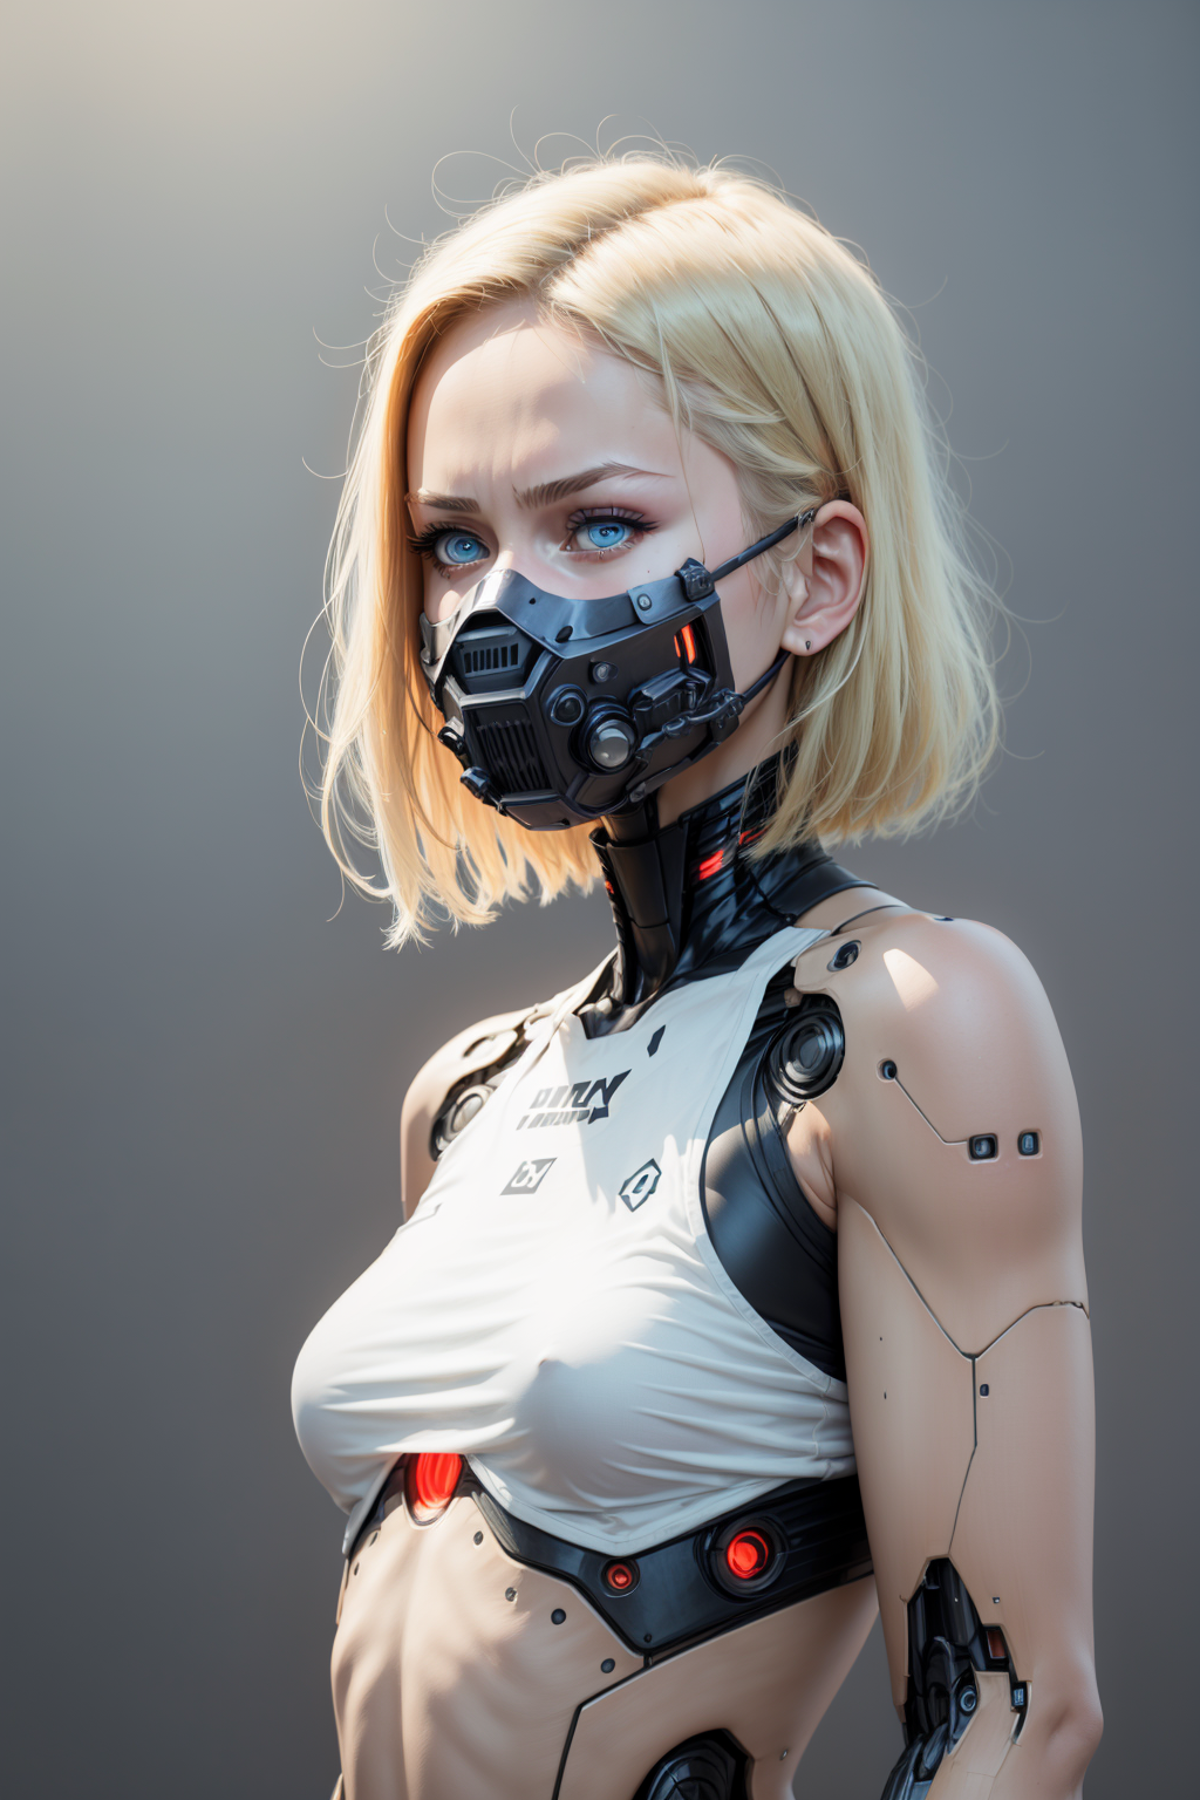 Robot Skin - Concept LORA image by Konan